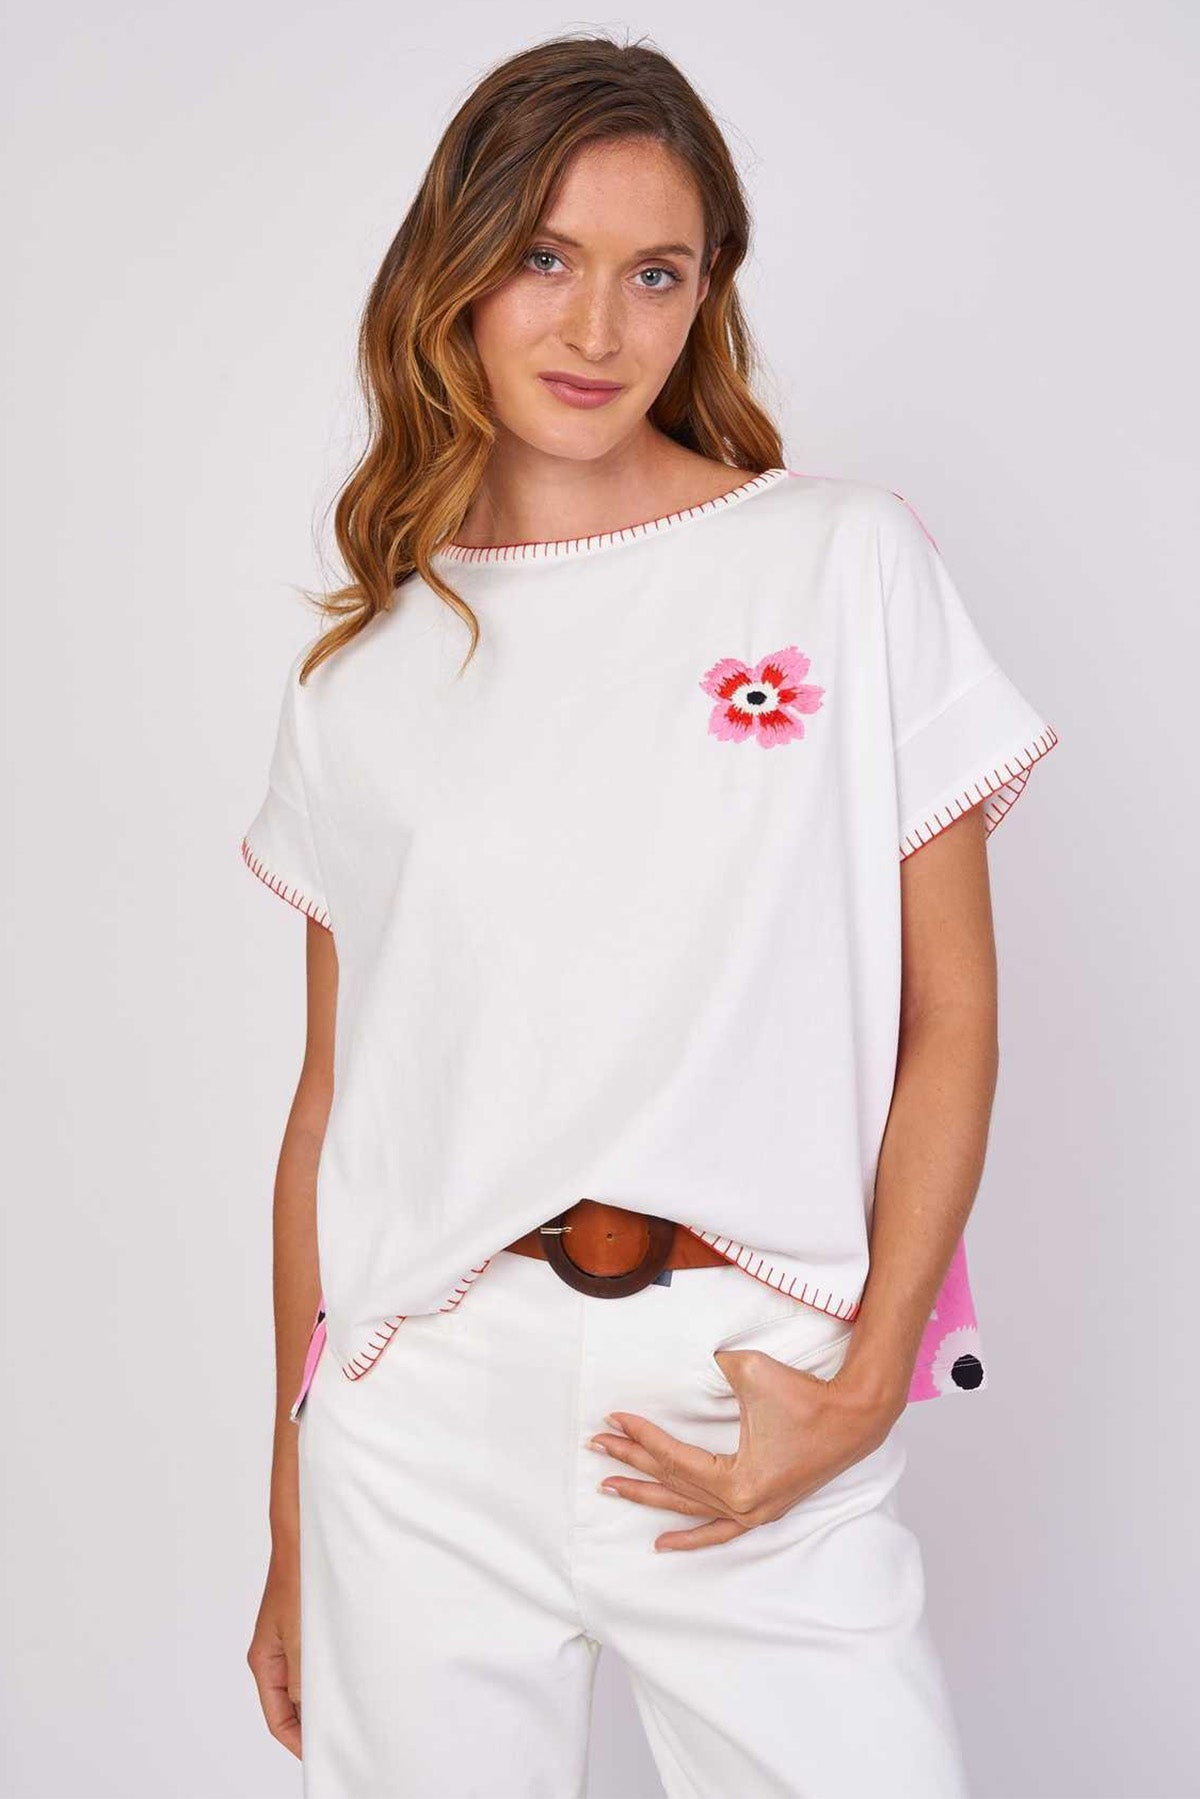 Rene Derhy Lorelei Çiçek Desenli T-shirt-Libas Trendy Fashion Store